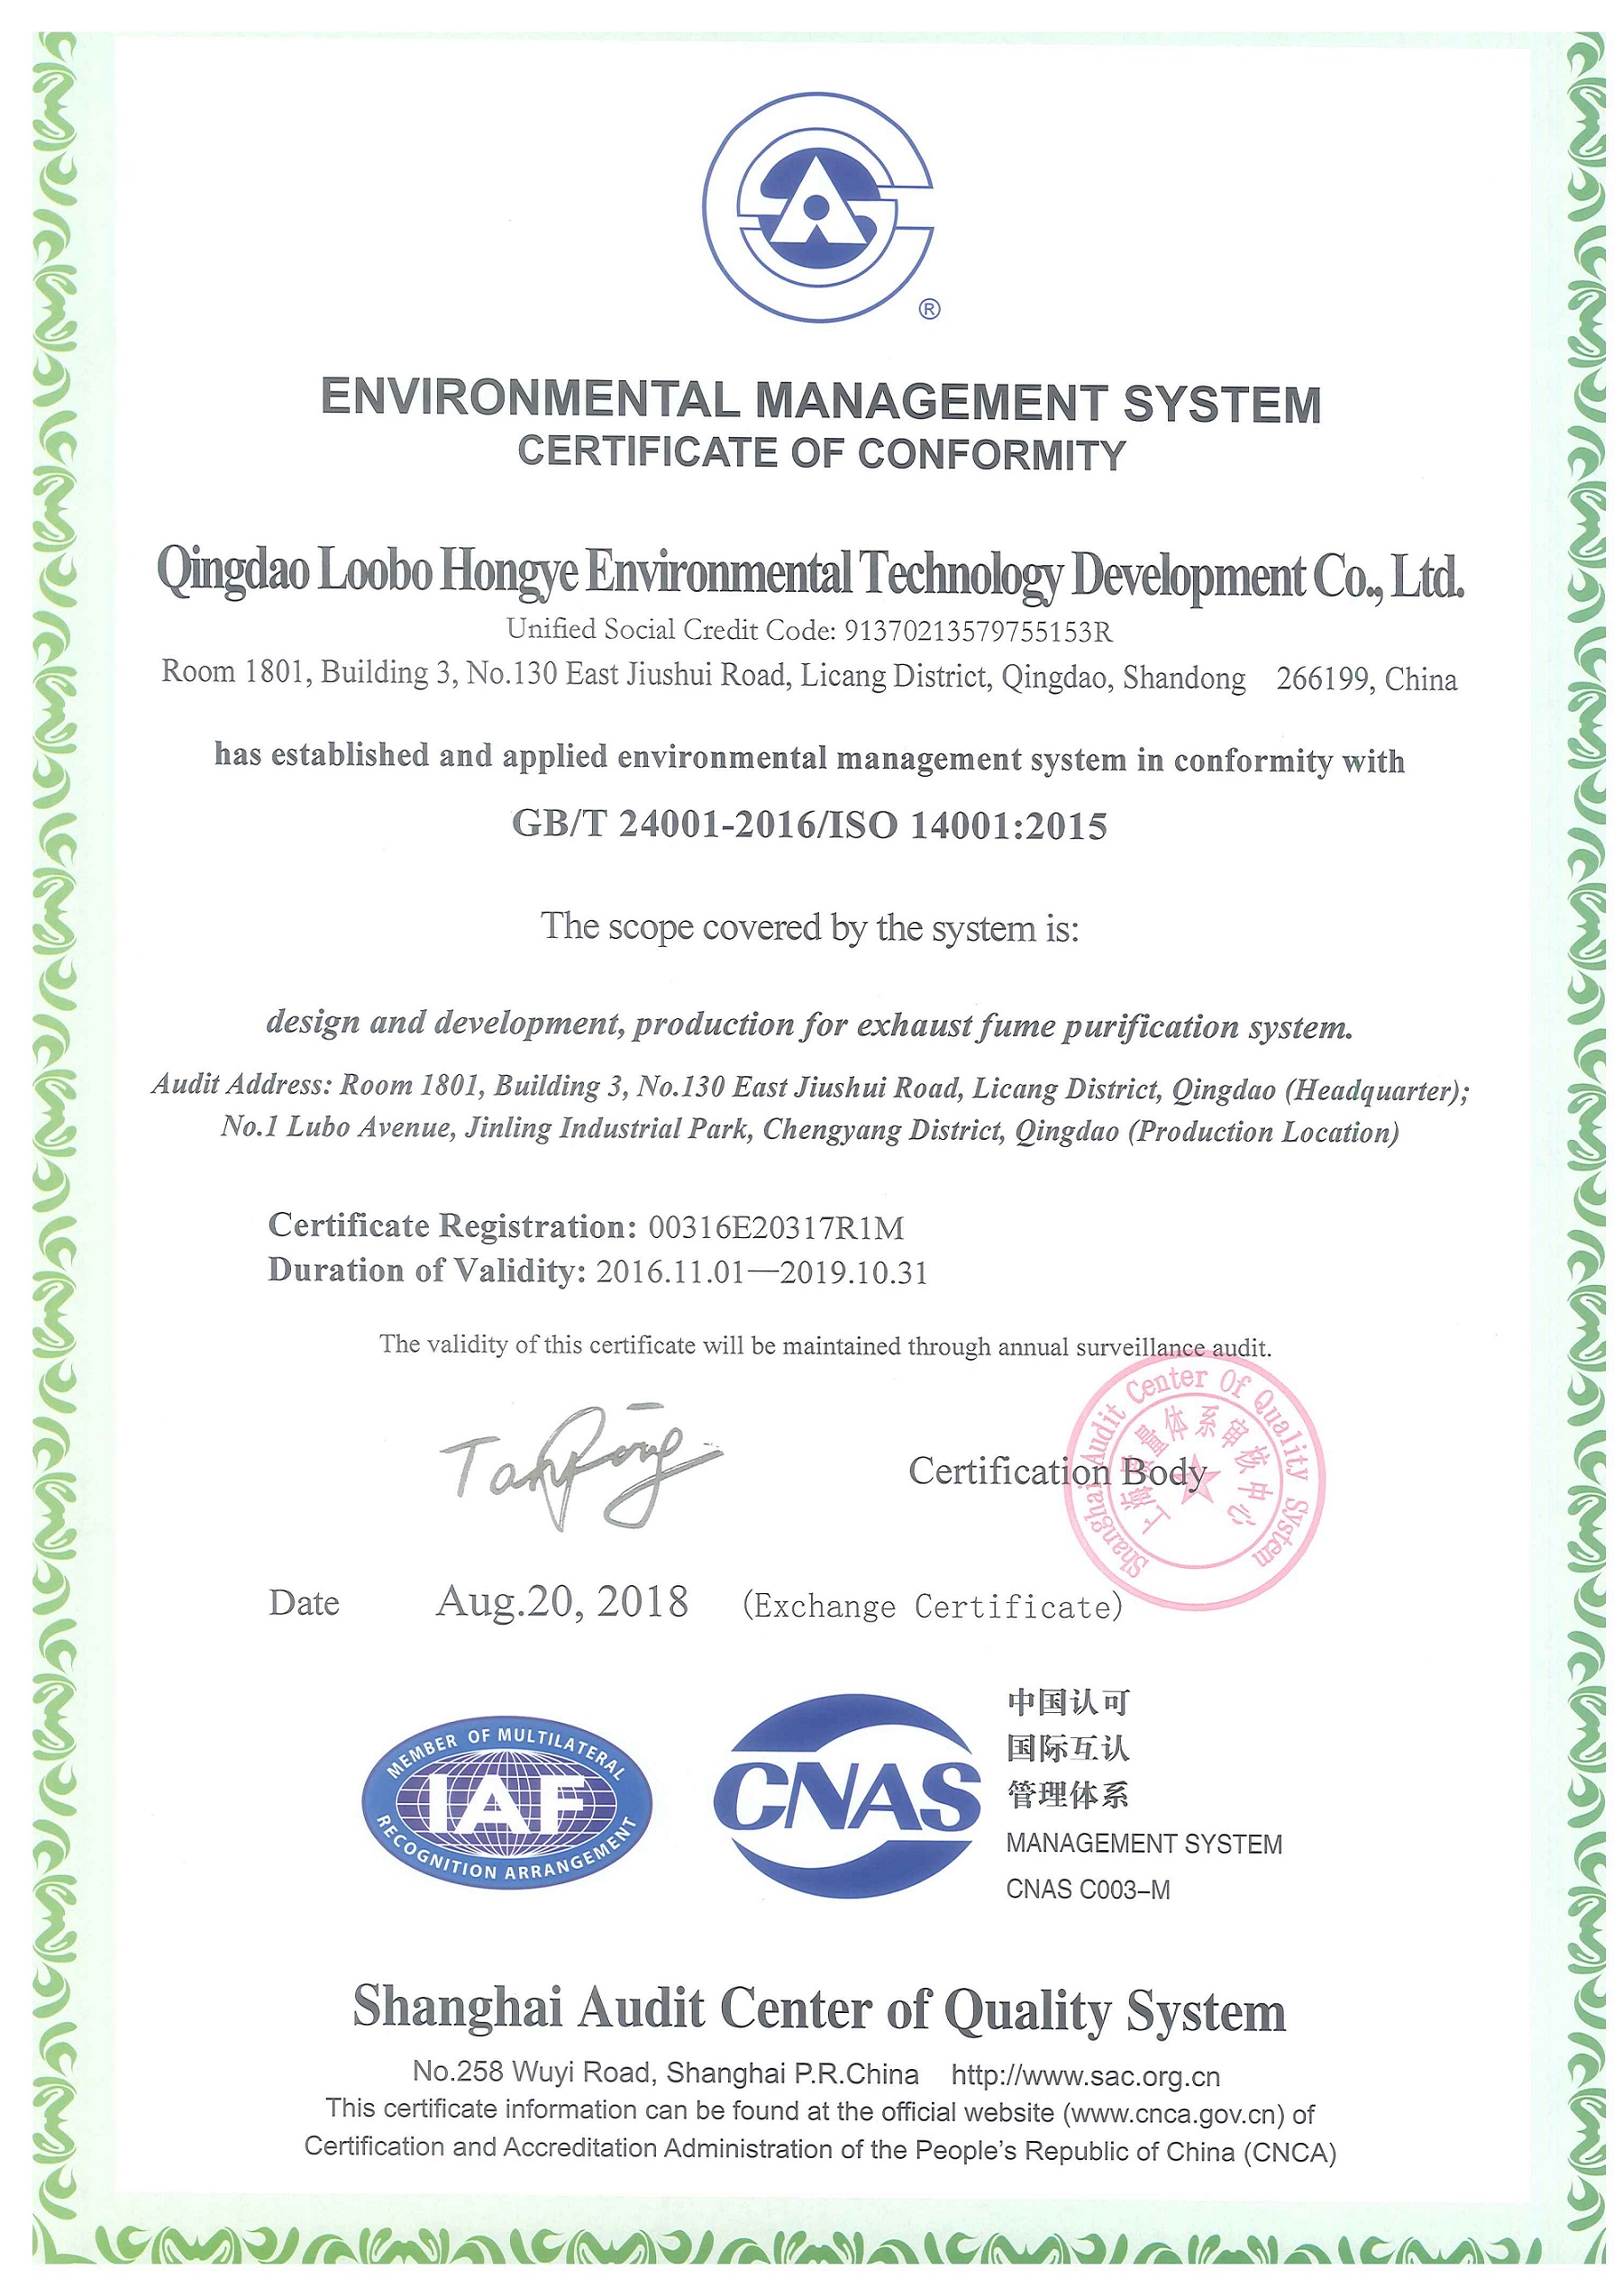 环境管理体系认证证书英文版-2018.8.20.jpg